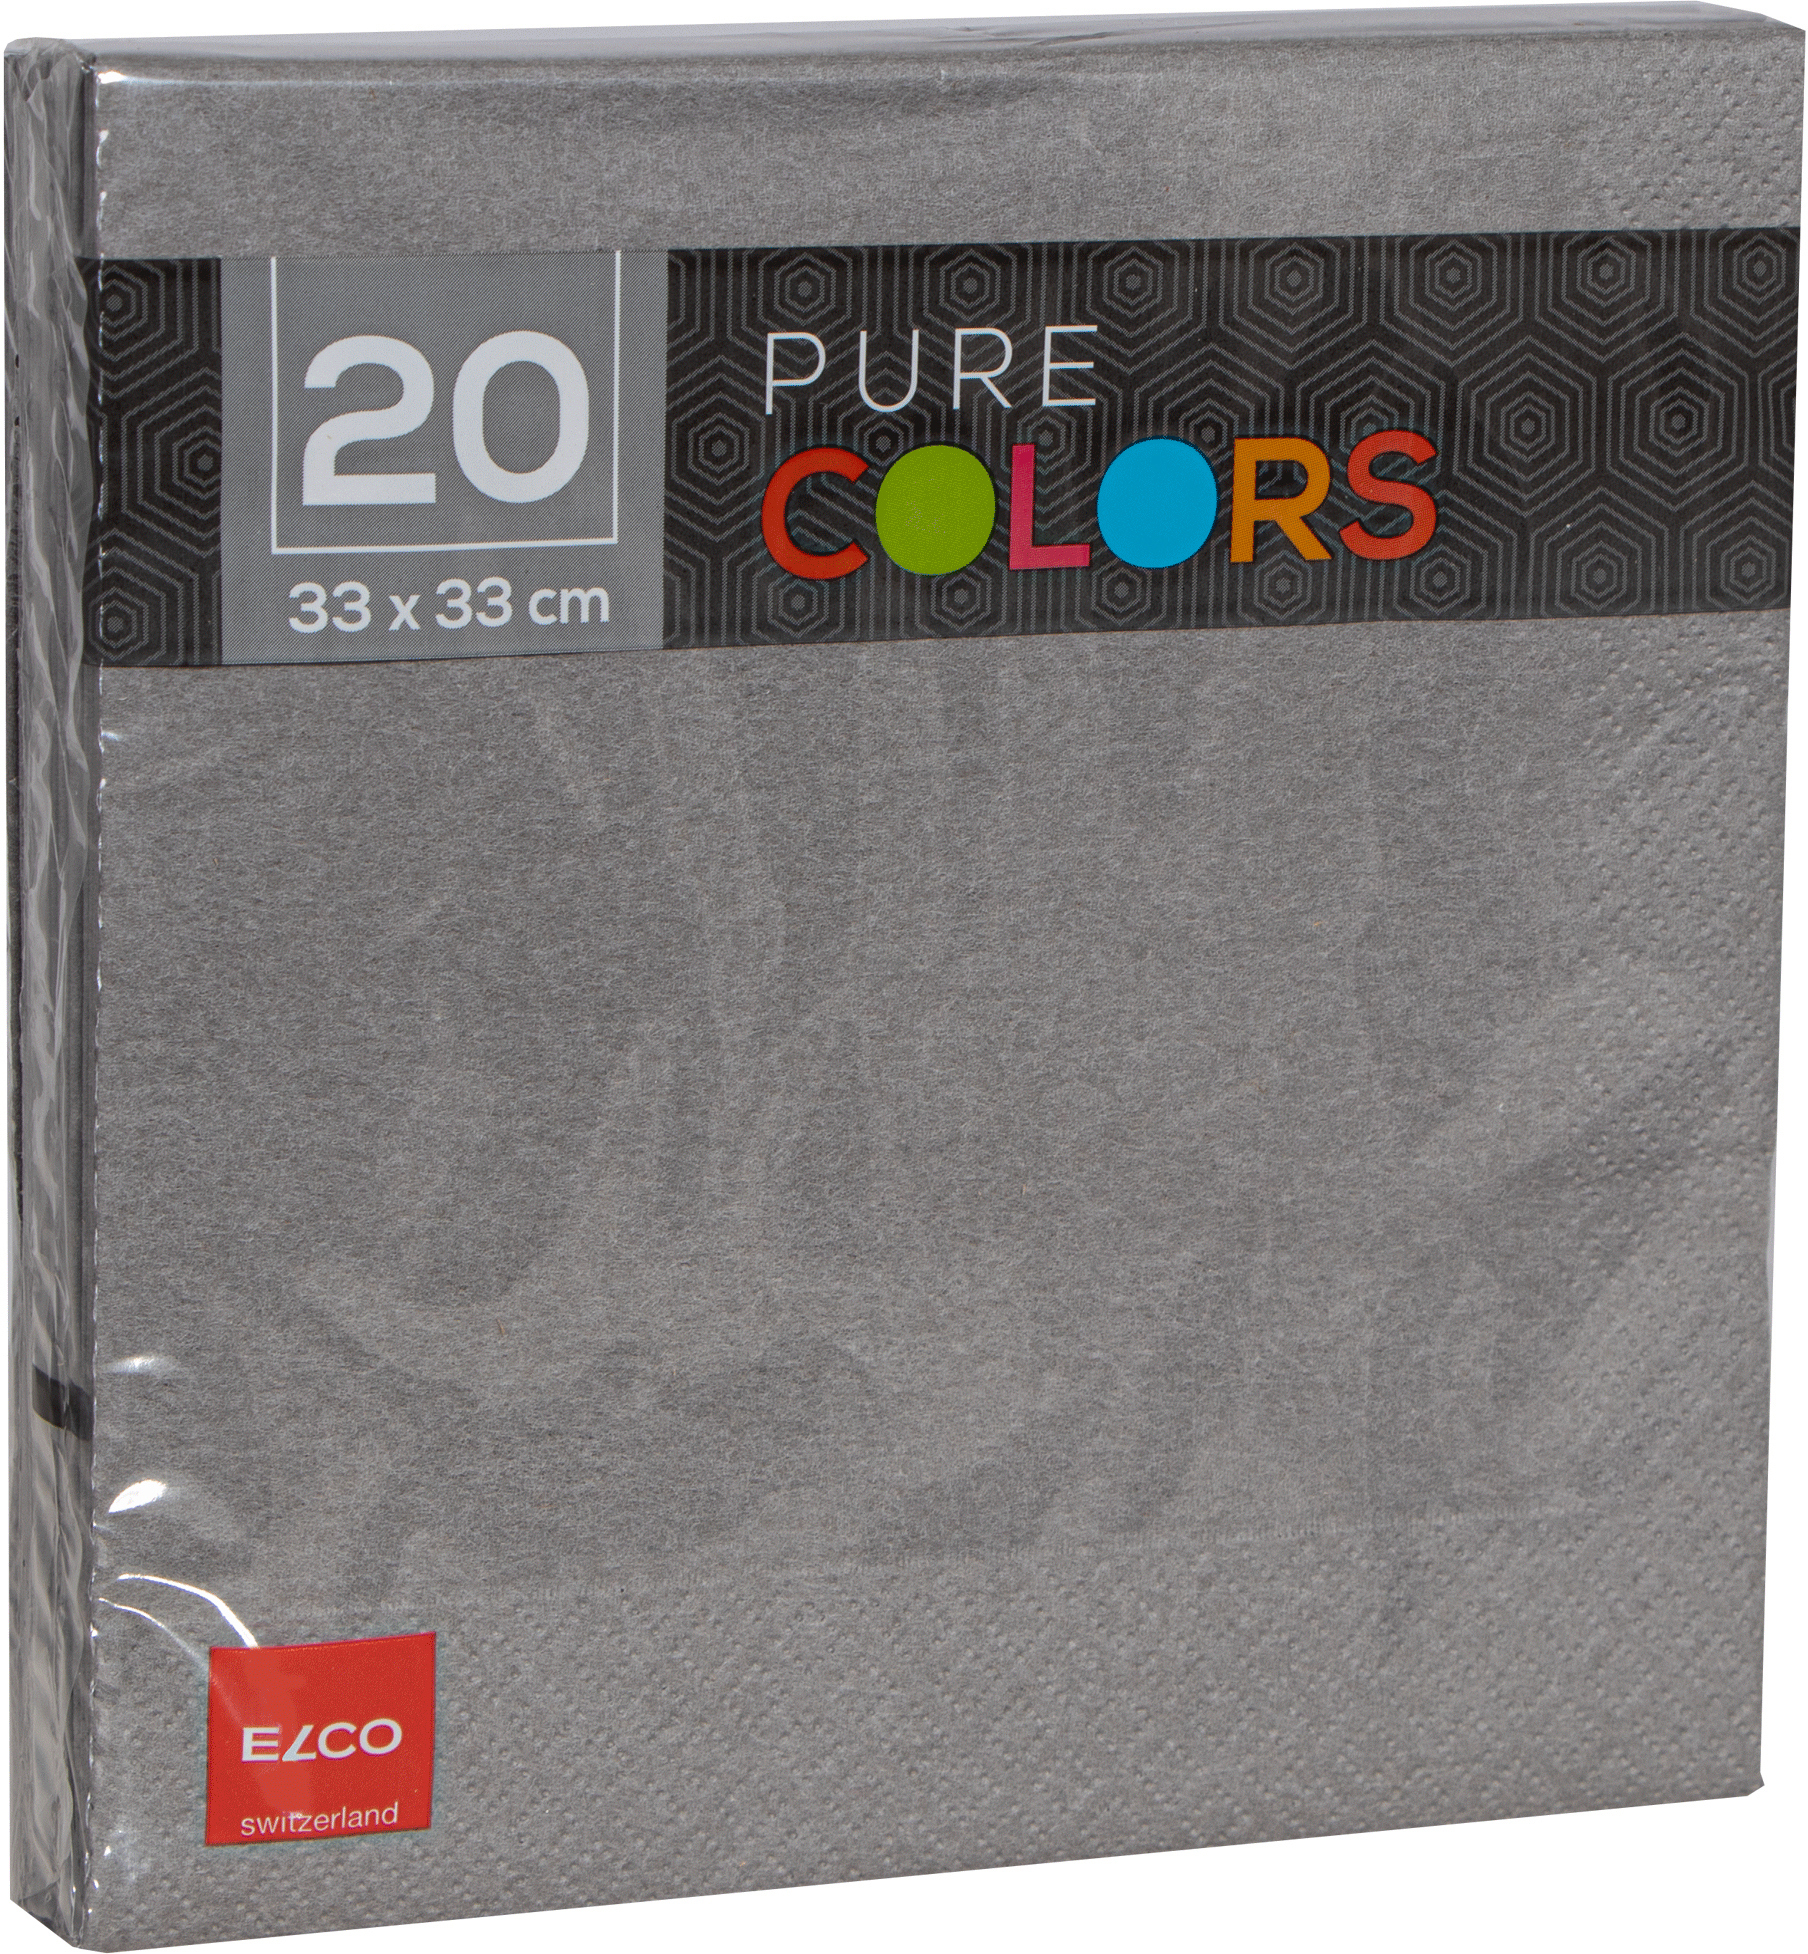 ELCO Serviettes tissue 33x33cm PC334020-011 3 plis, gris 20pcs.